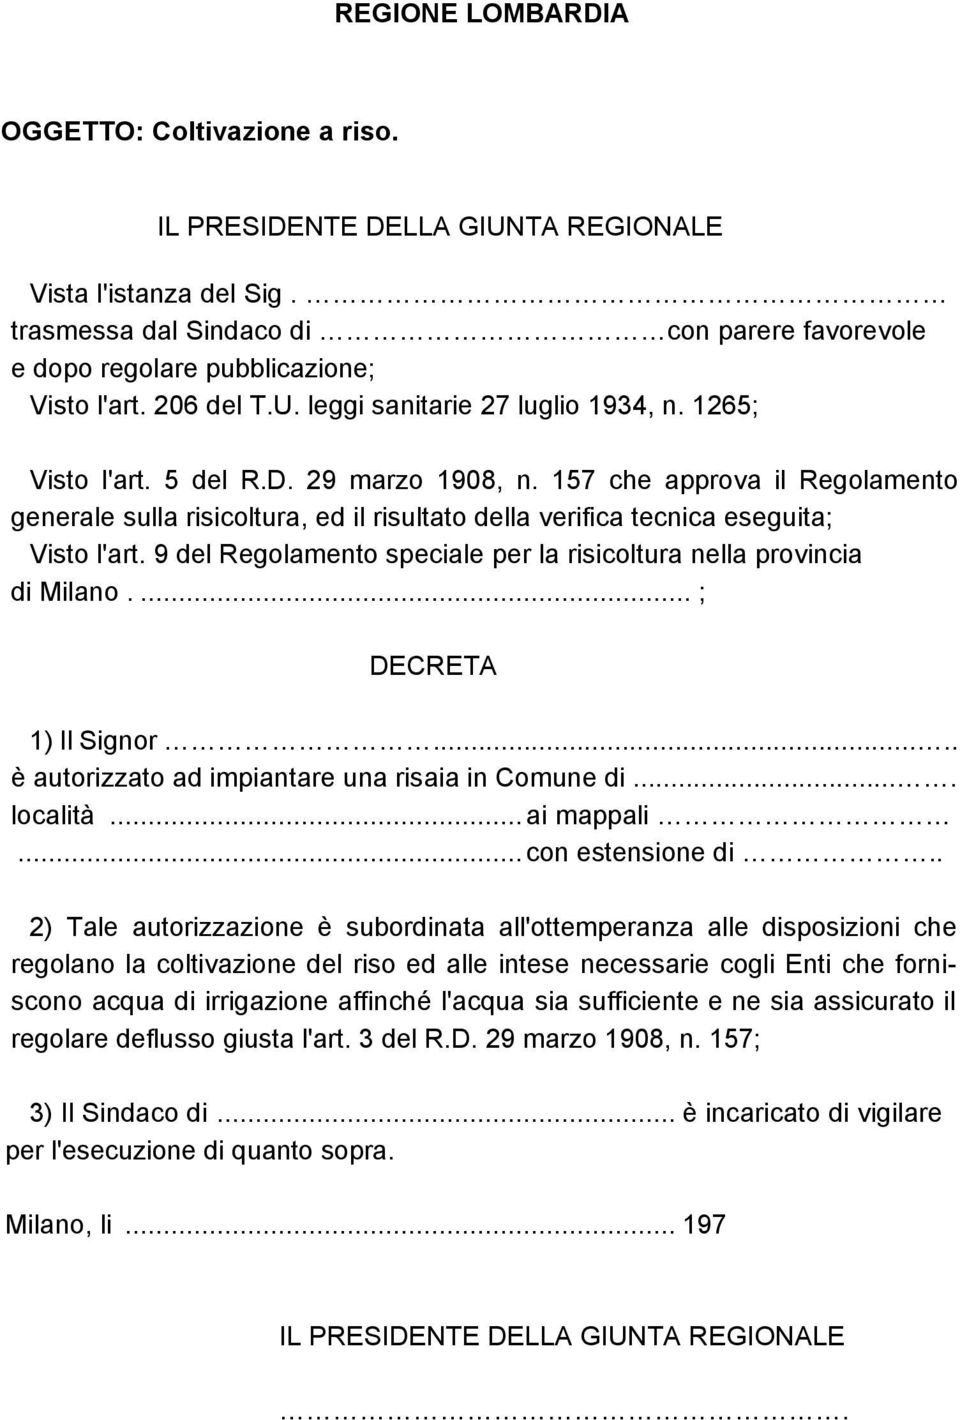 157 che approva il Regolamento generale sulla risicoltura, ed il risultato della verifica tecnica eseguita; Visto l'art. 9 del Regolamento speciale per la risicoltura nella provincia di Milano.